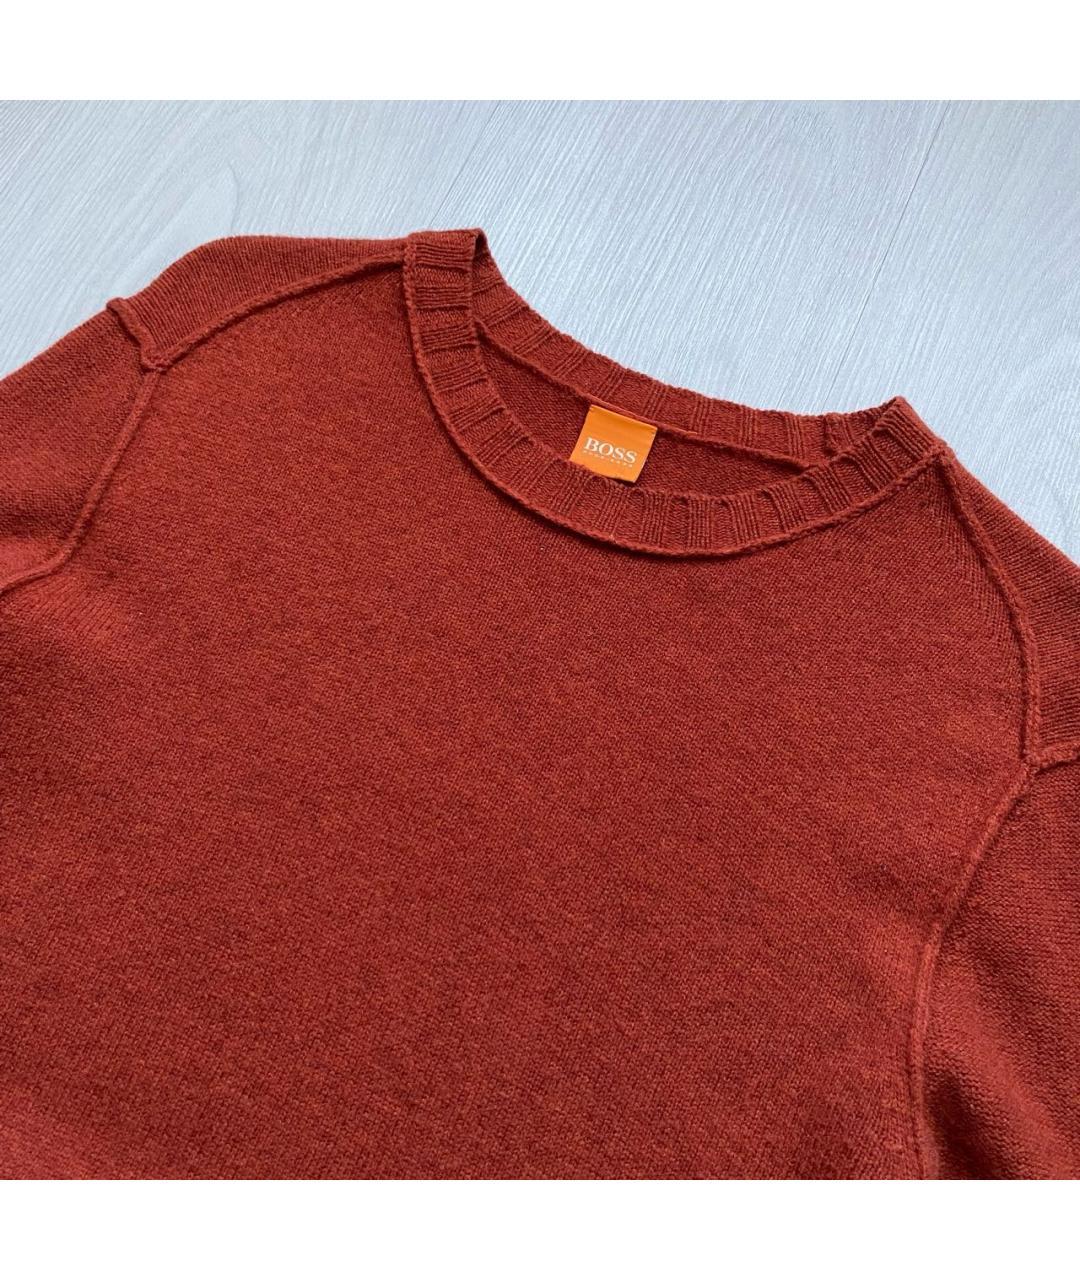 HUGO BOSS Оранжевый шерстяной джемпер / свитер, фото 2